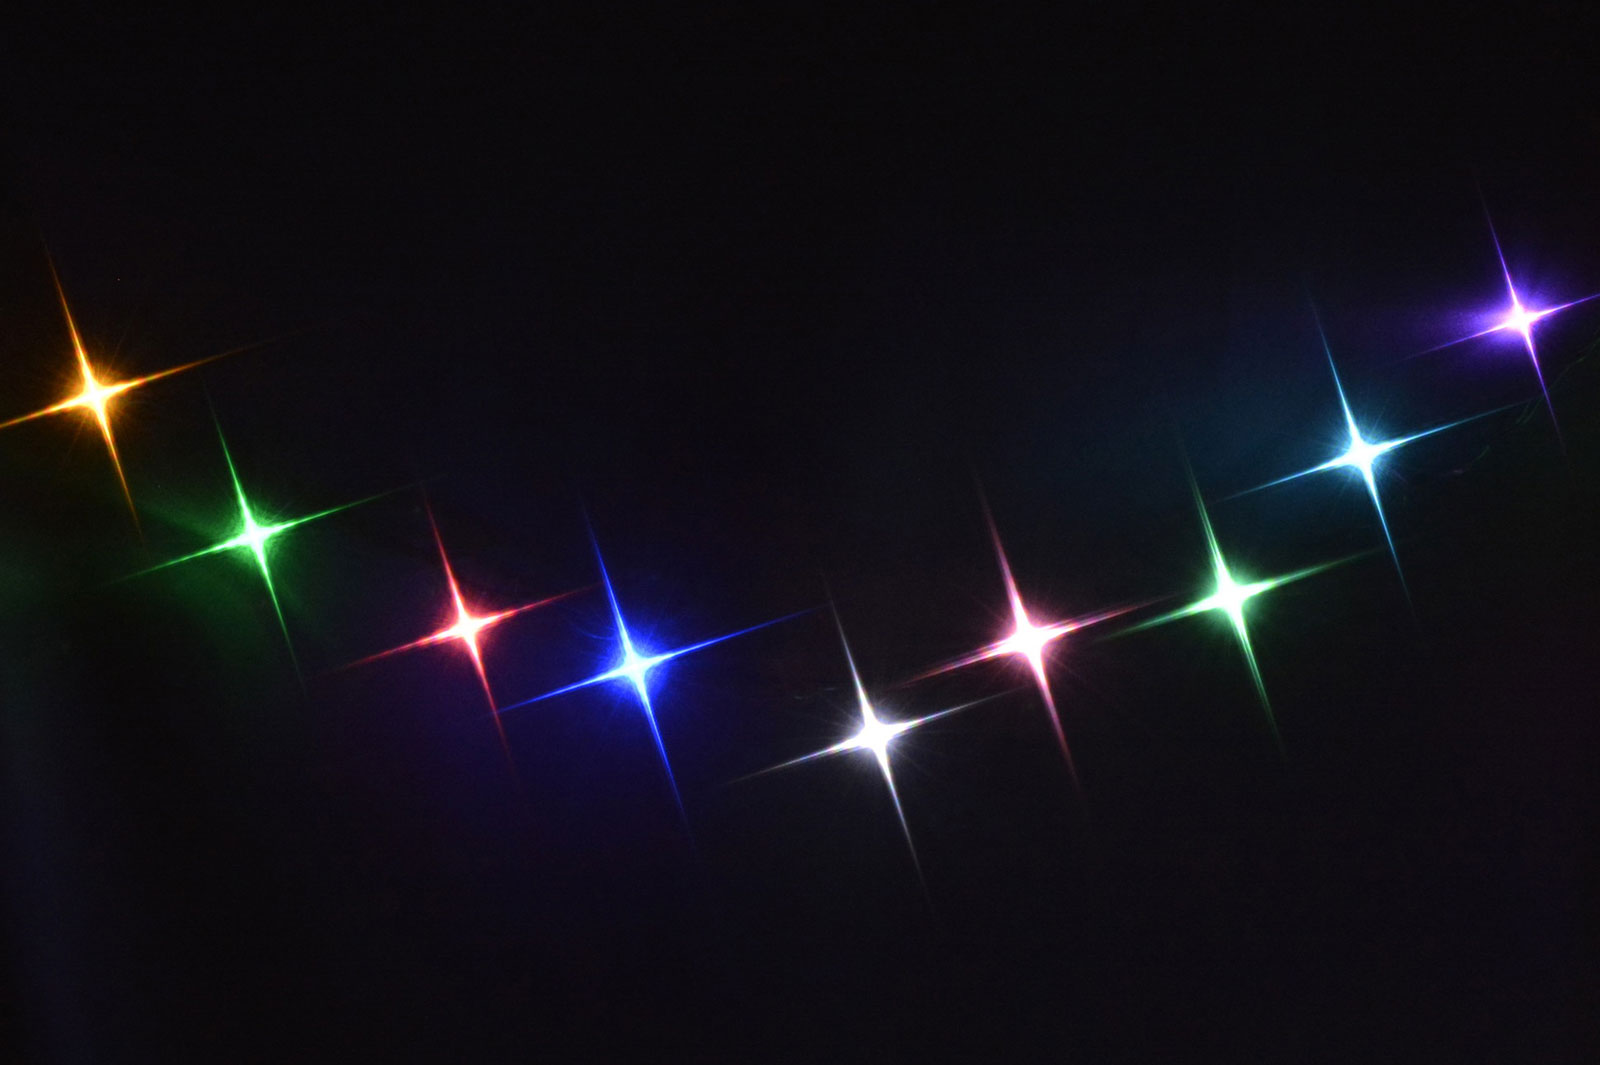 С фильтром Kenko PRO1D R-Twinkle Star (W): аккуратный, словно нарисованный, рисунок сверкающих звёзд